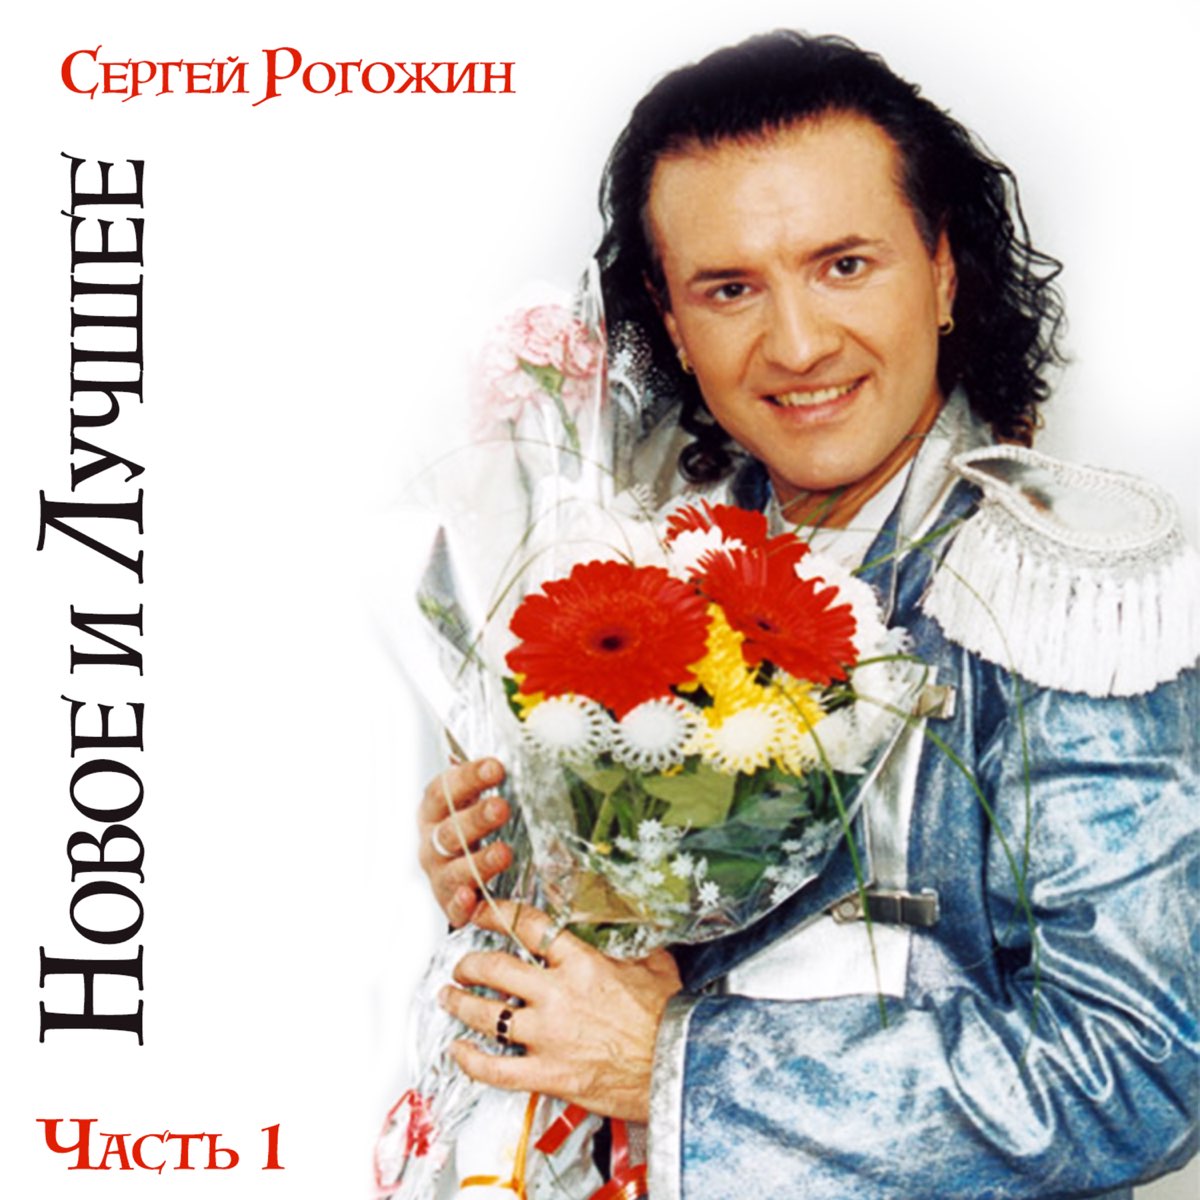 Исполнитель песни главное чтобы. Рогозин певец.